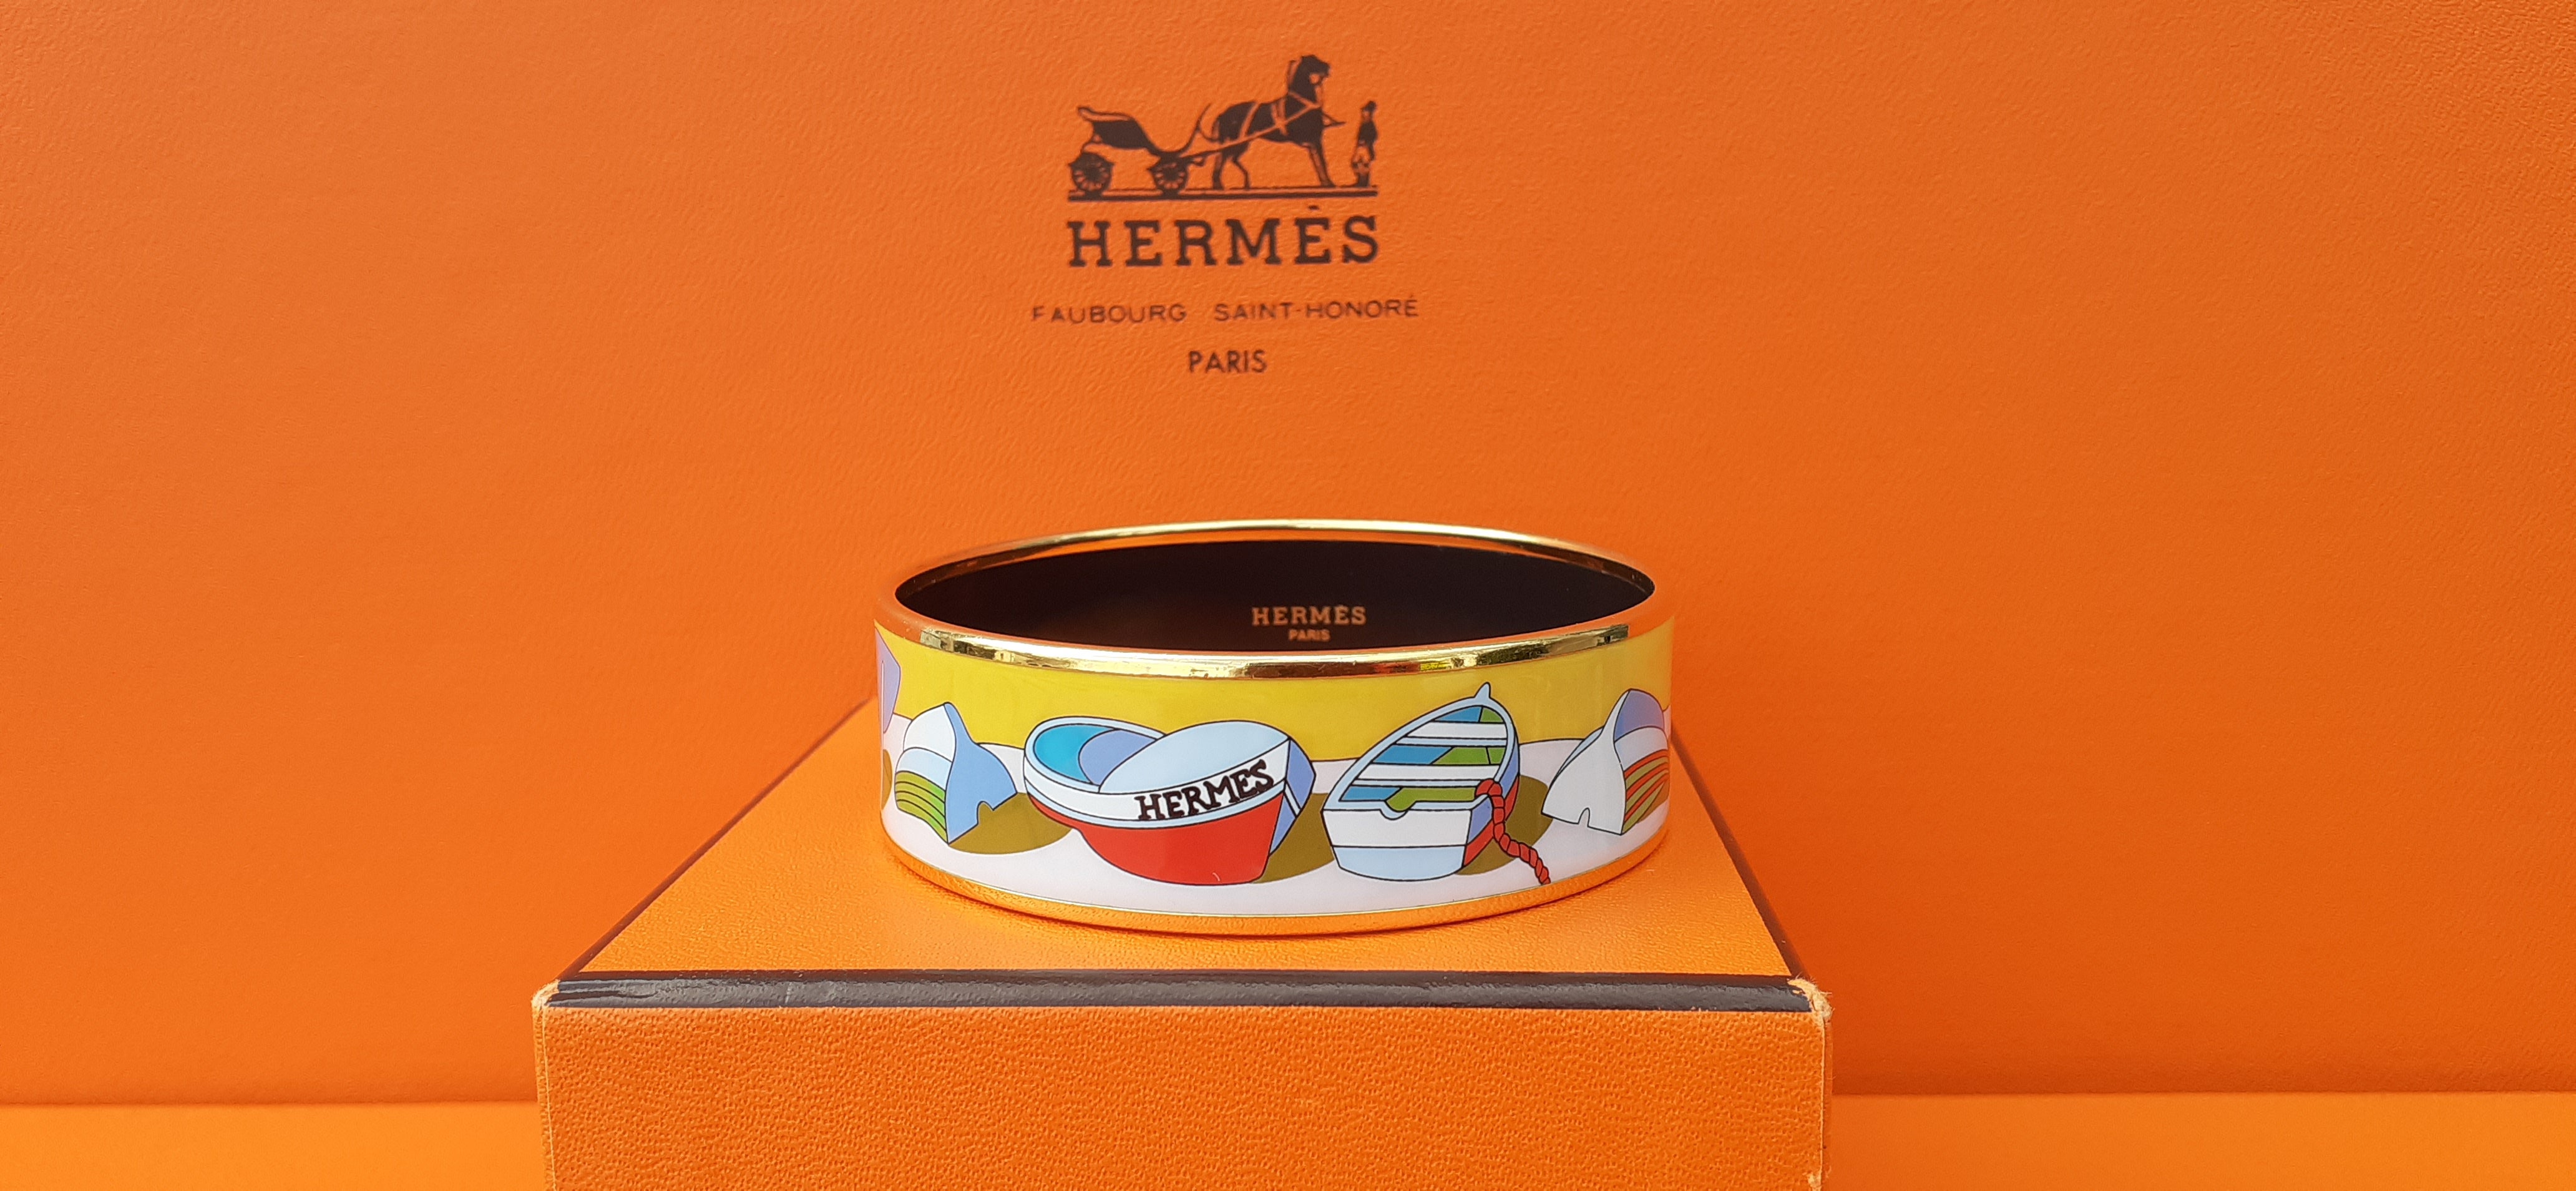 Magnifique bracelet Hermès authentique

Imprimerie : 